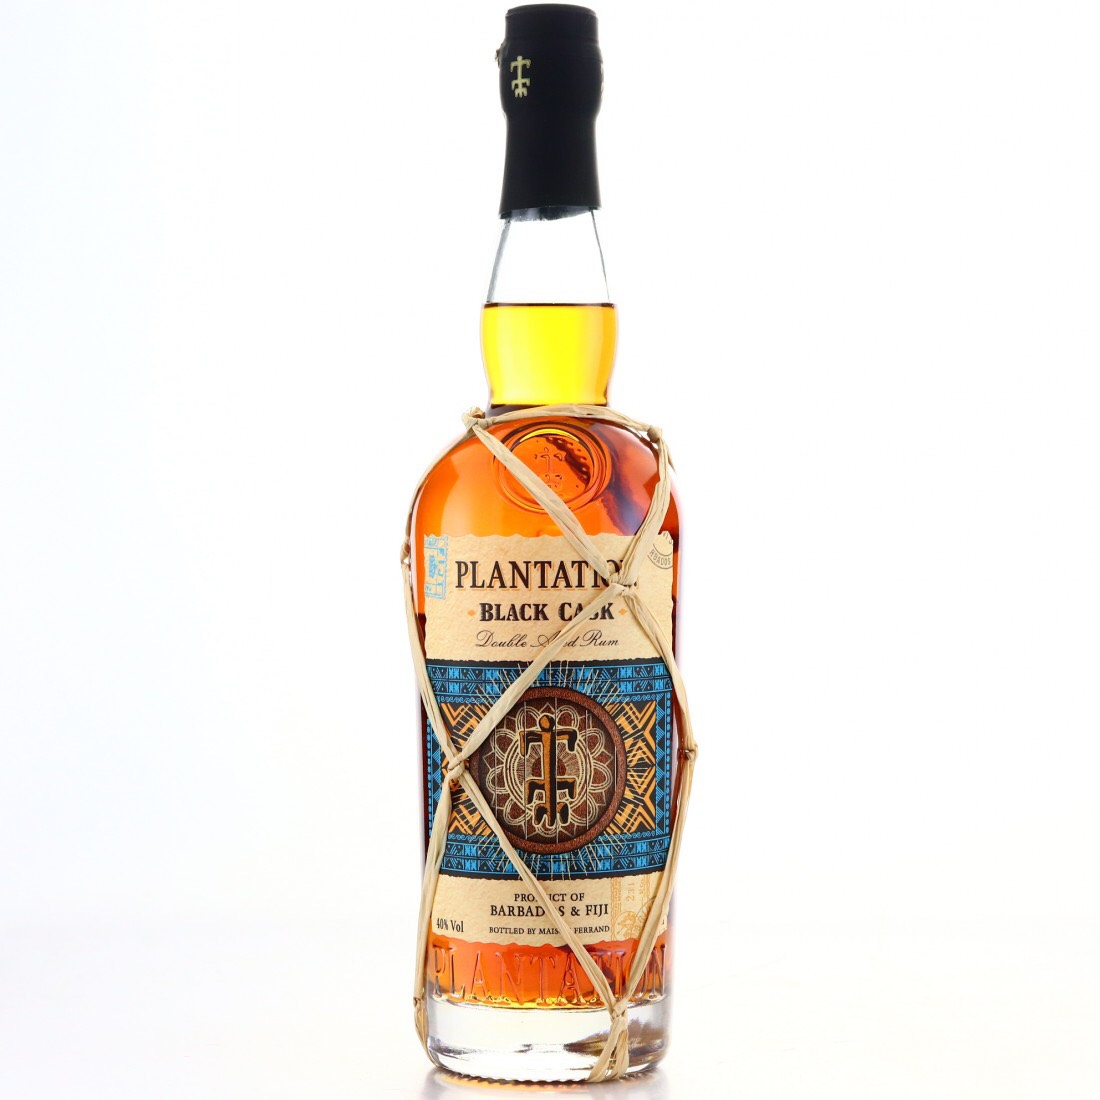 Bottle image of Plantation Black Cask Barbados & Fiji